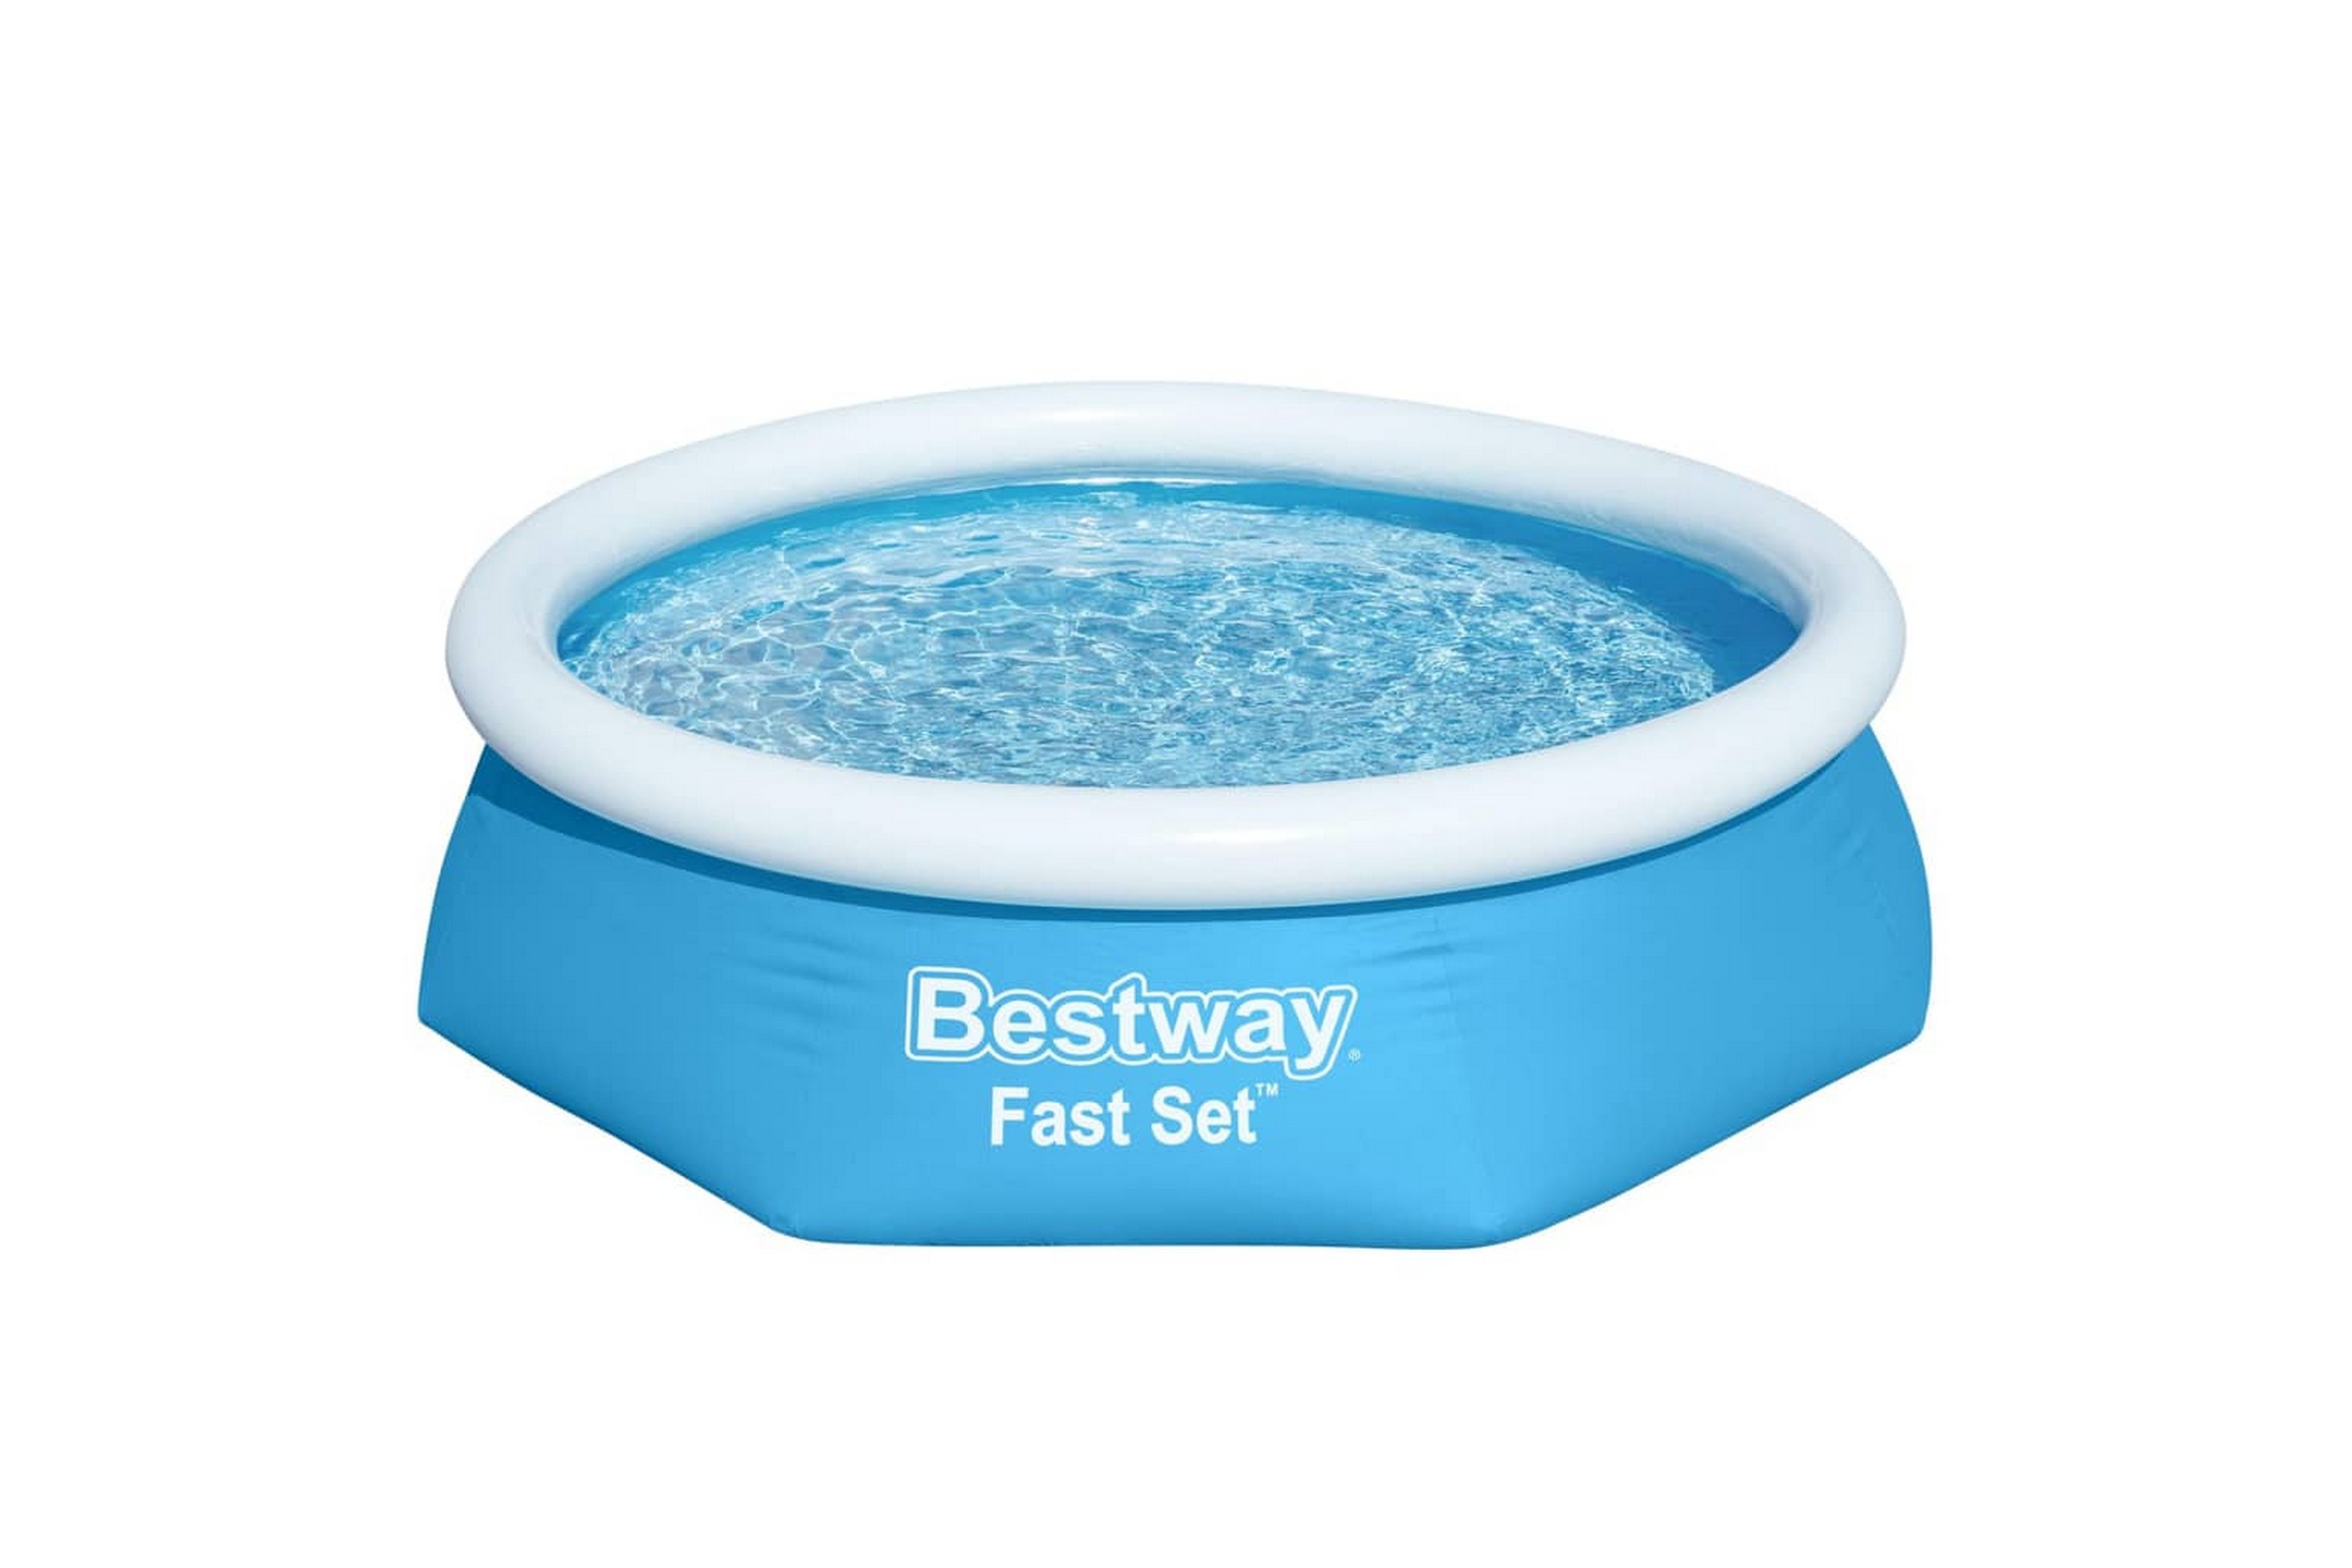 Bestway Bestway Fast Set täytettävä uima-allas pyöreä 244x66 cm 5726 -